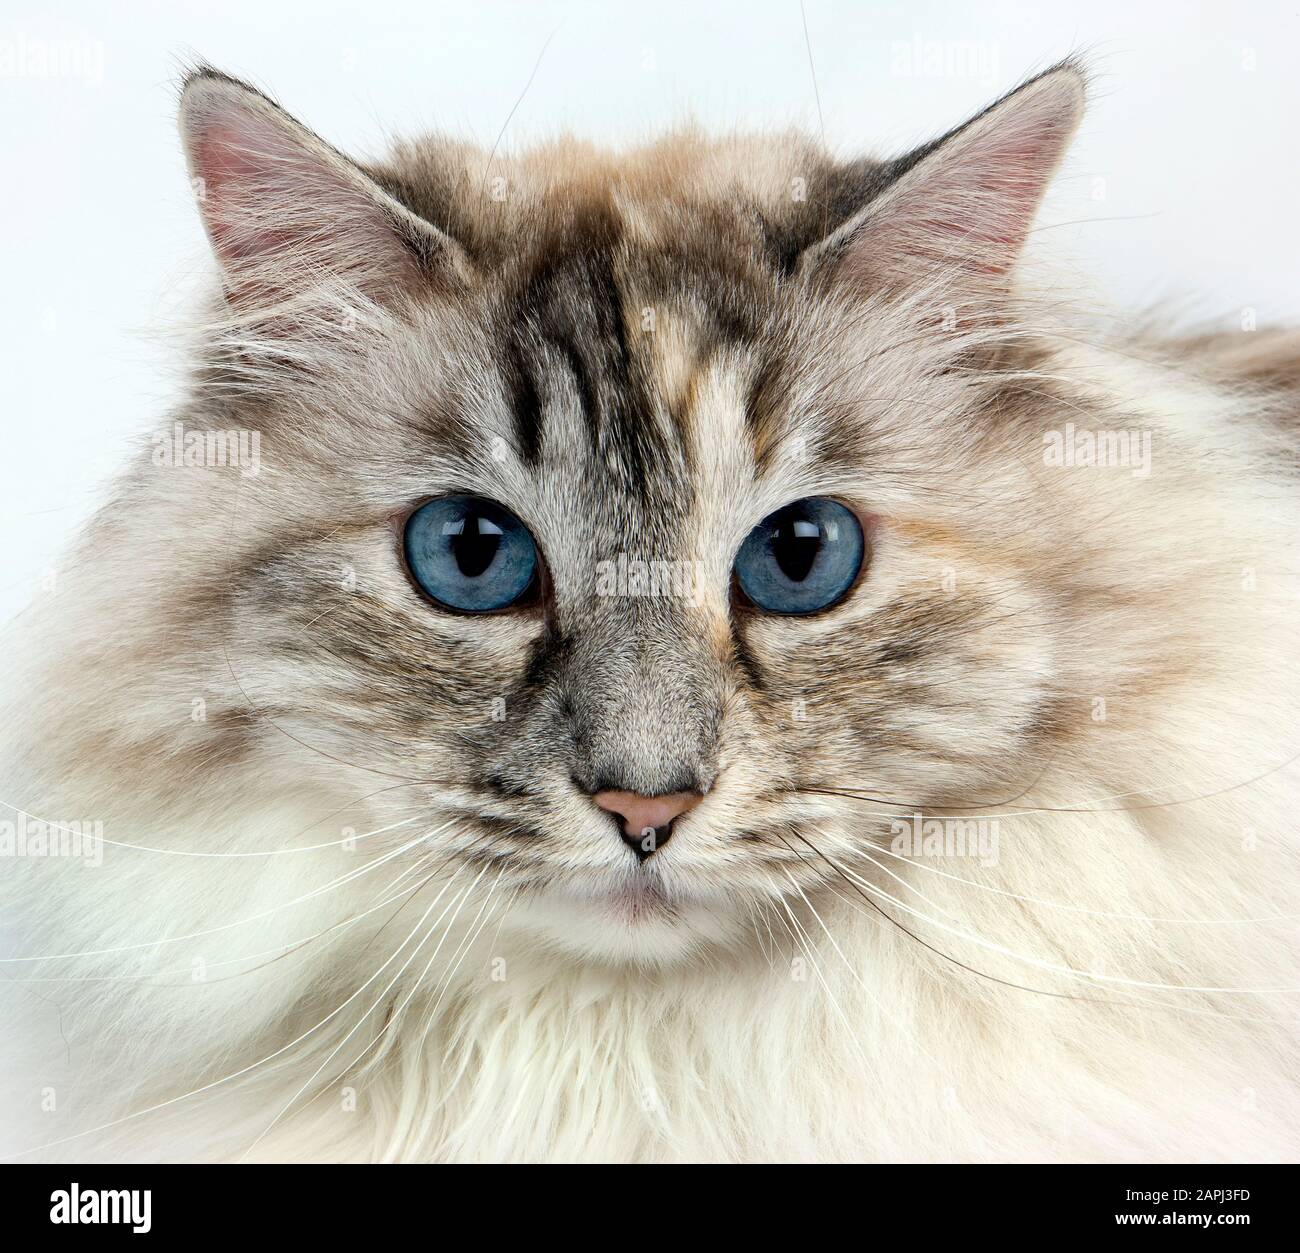 Bianco e seal tabby point siberiano gatto domestico, Femmina contro uno sfondo bianco Foto Stock